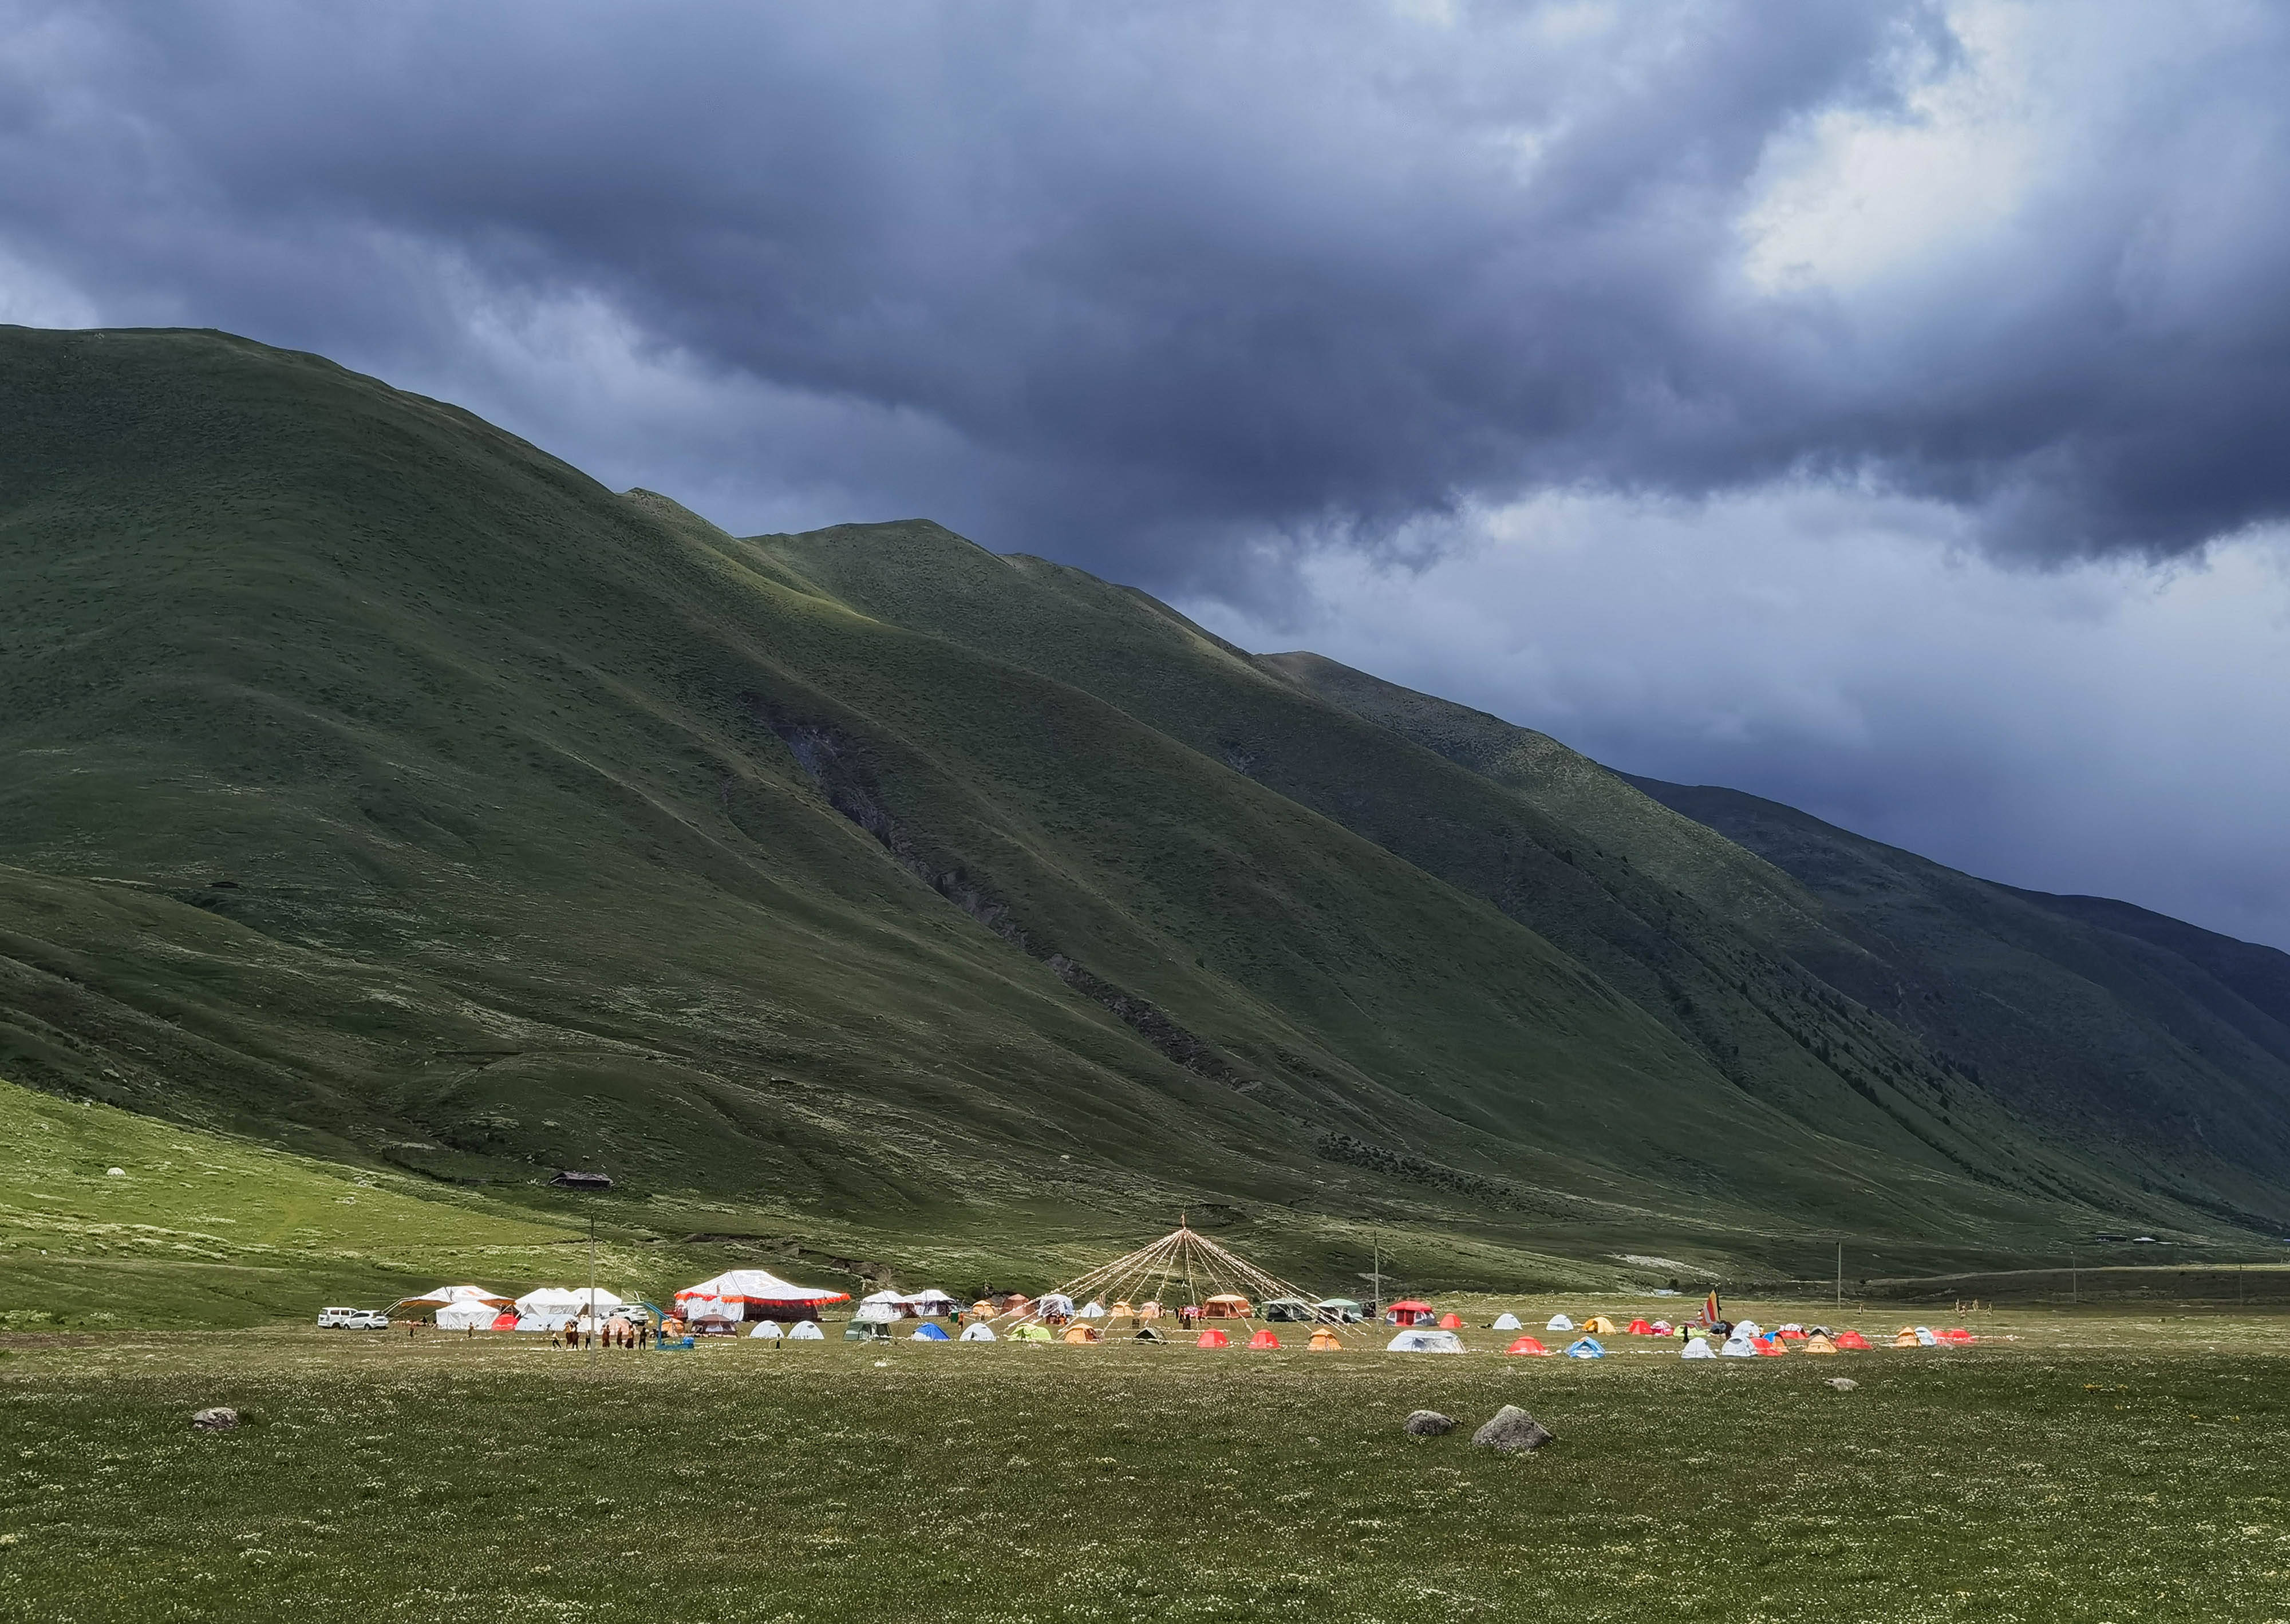 7月25日,在道孚县龙灯草原,藏族群众搭起帐篷休闲.